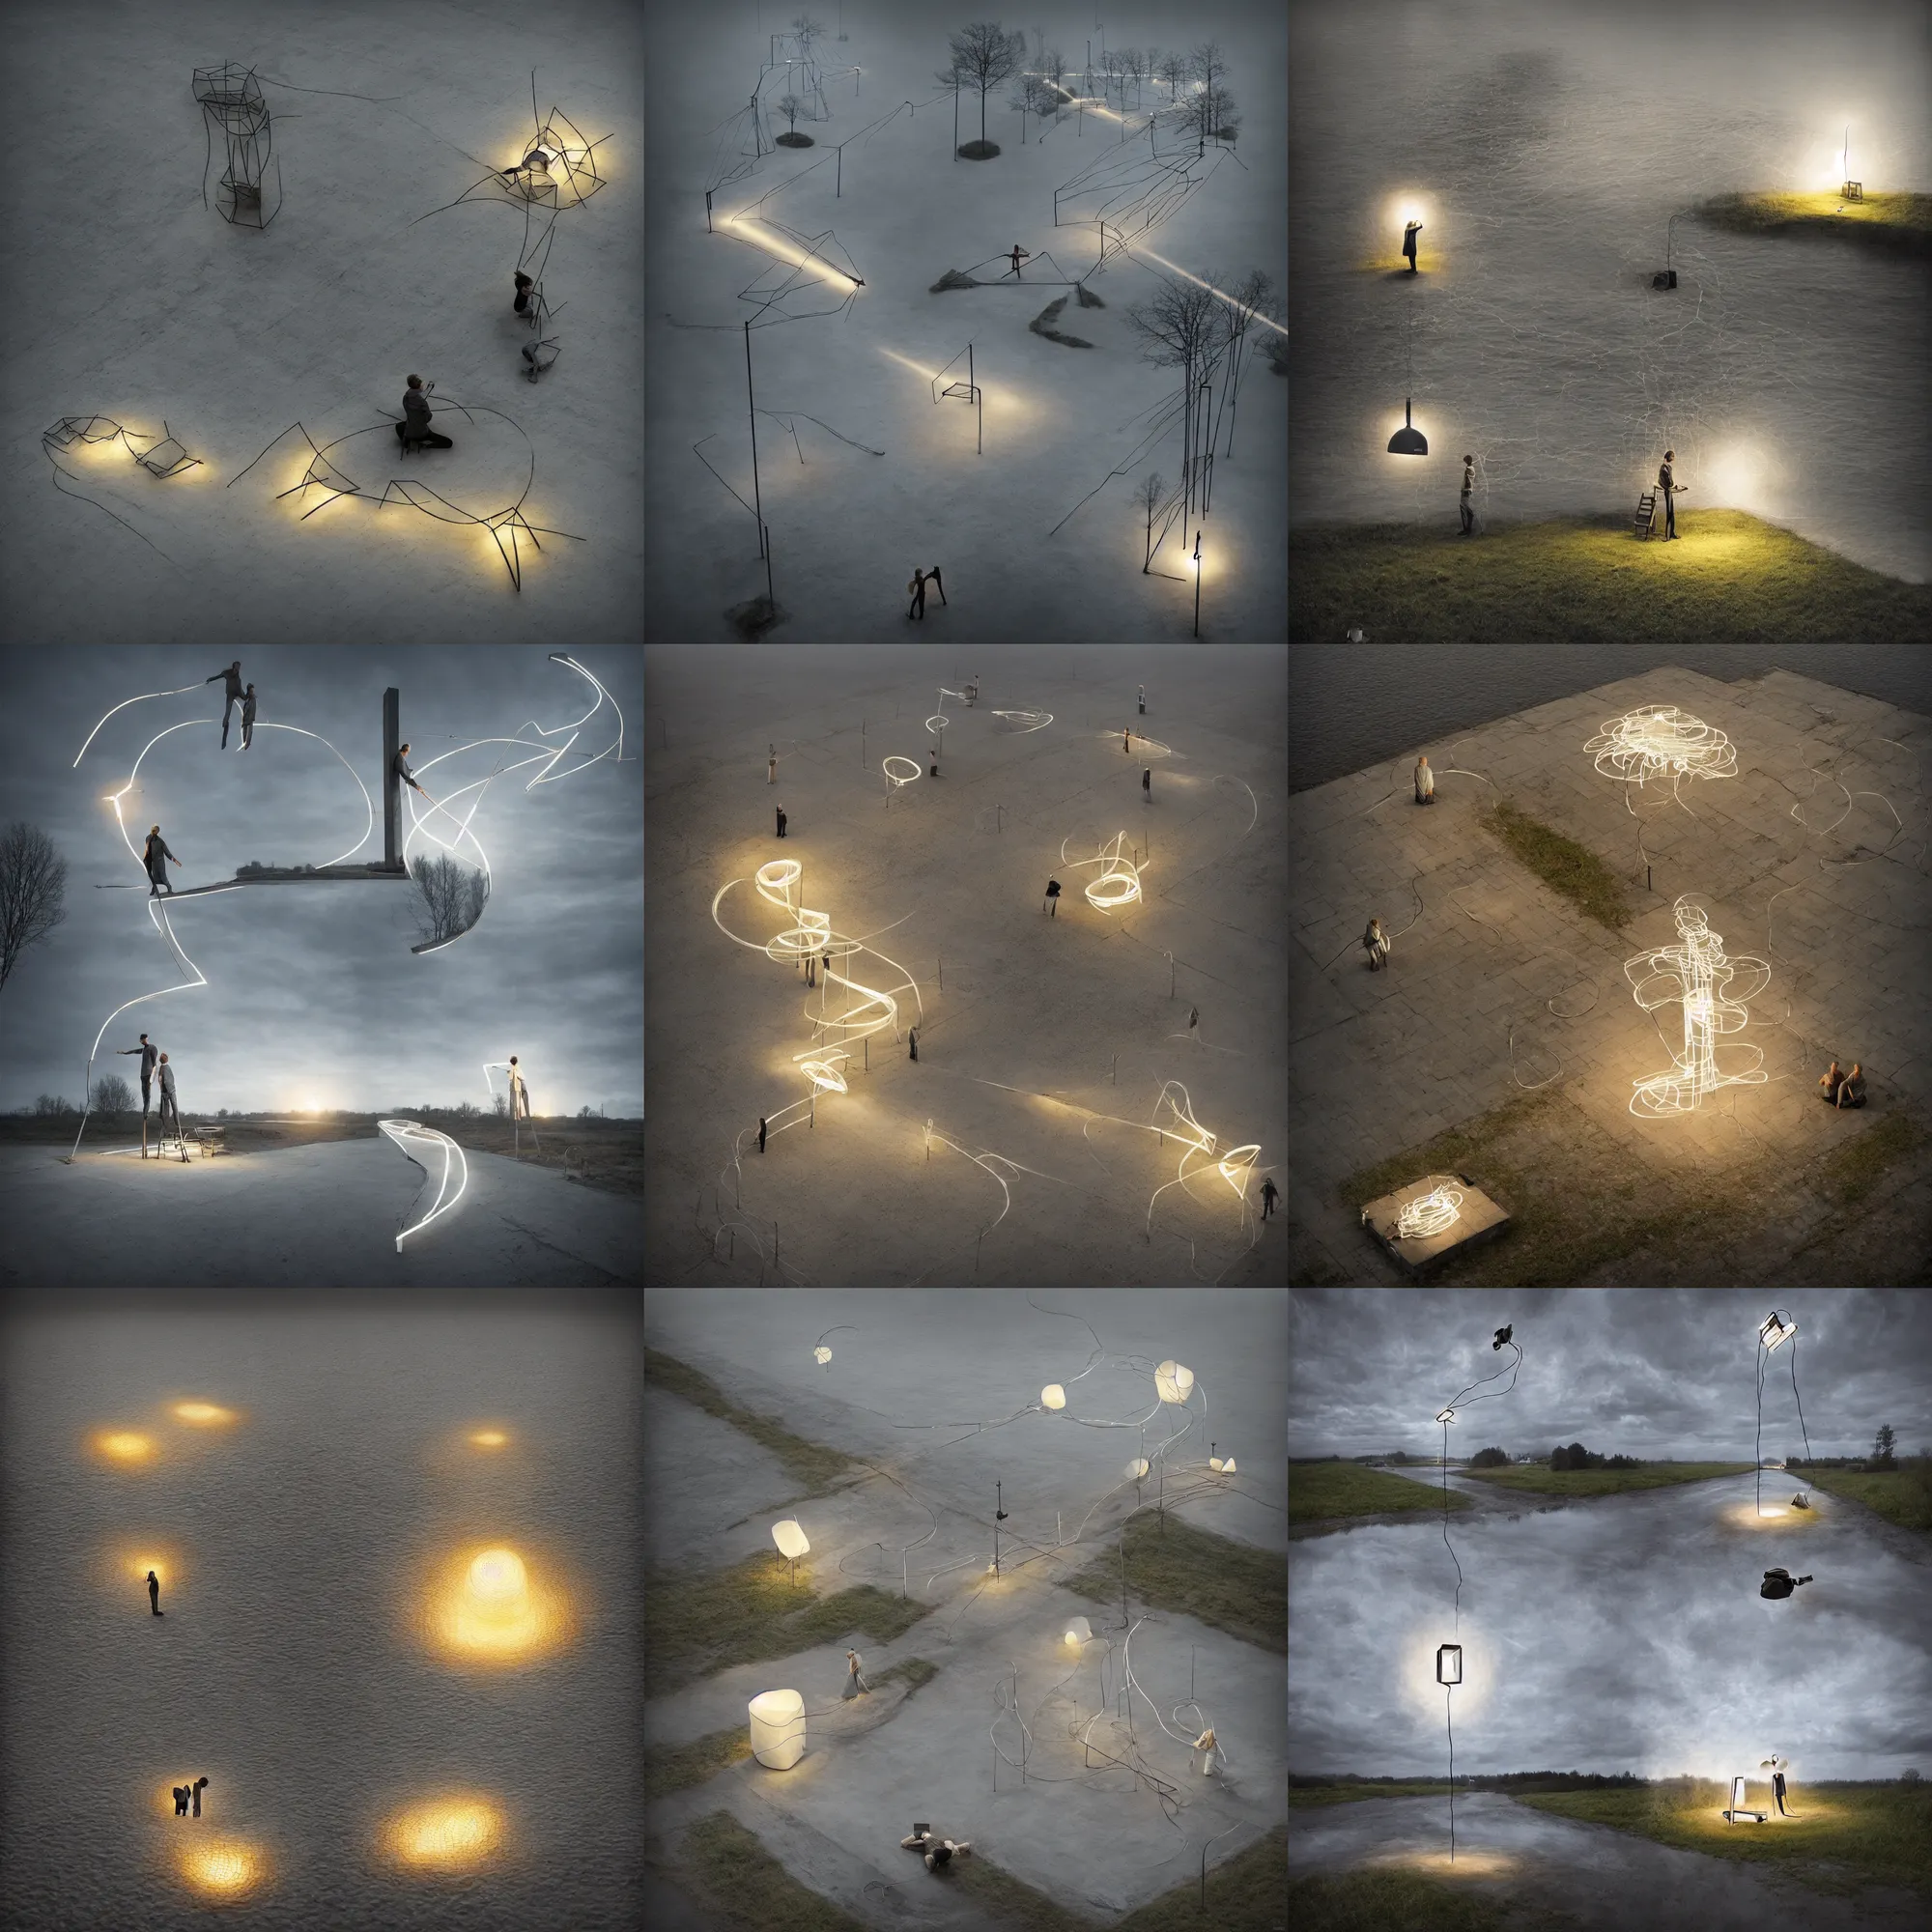 Prompt: light sculpture by erik johansson